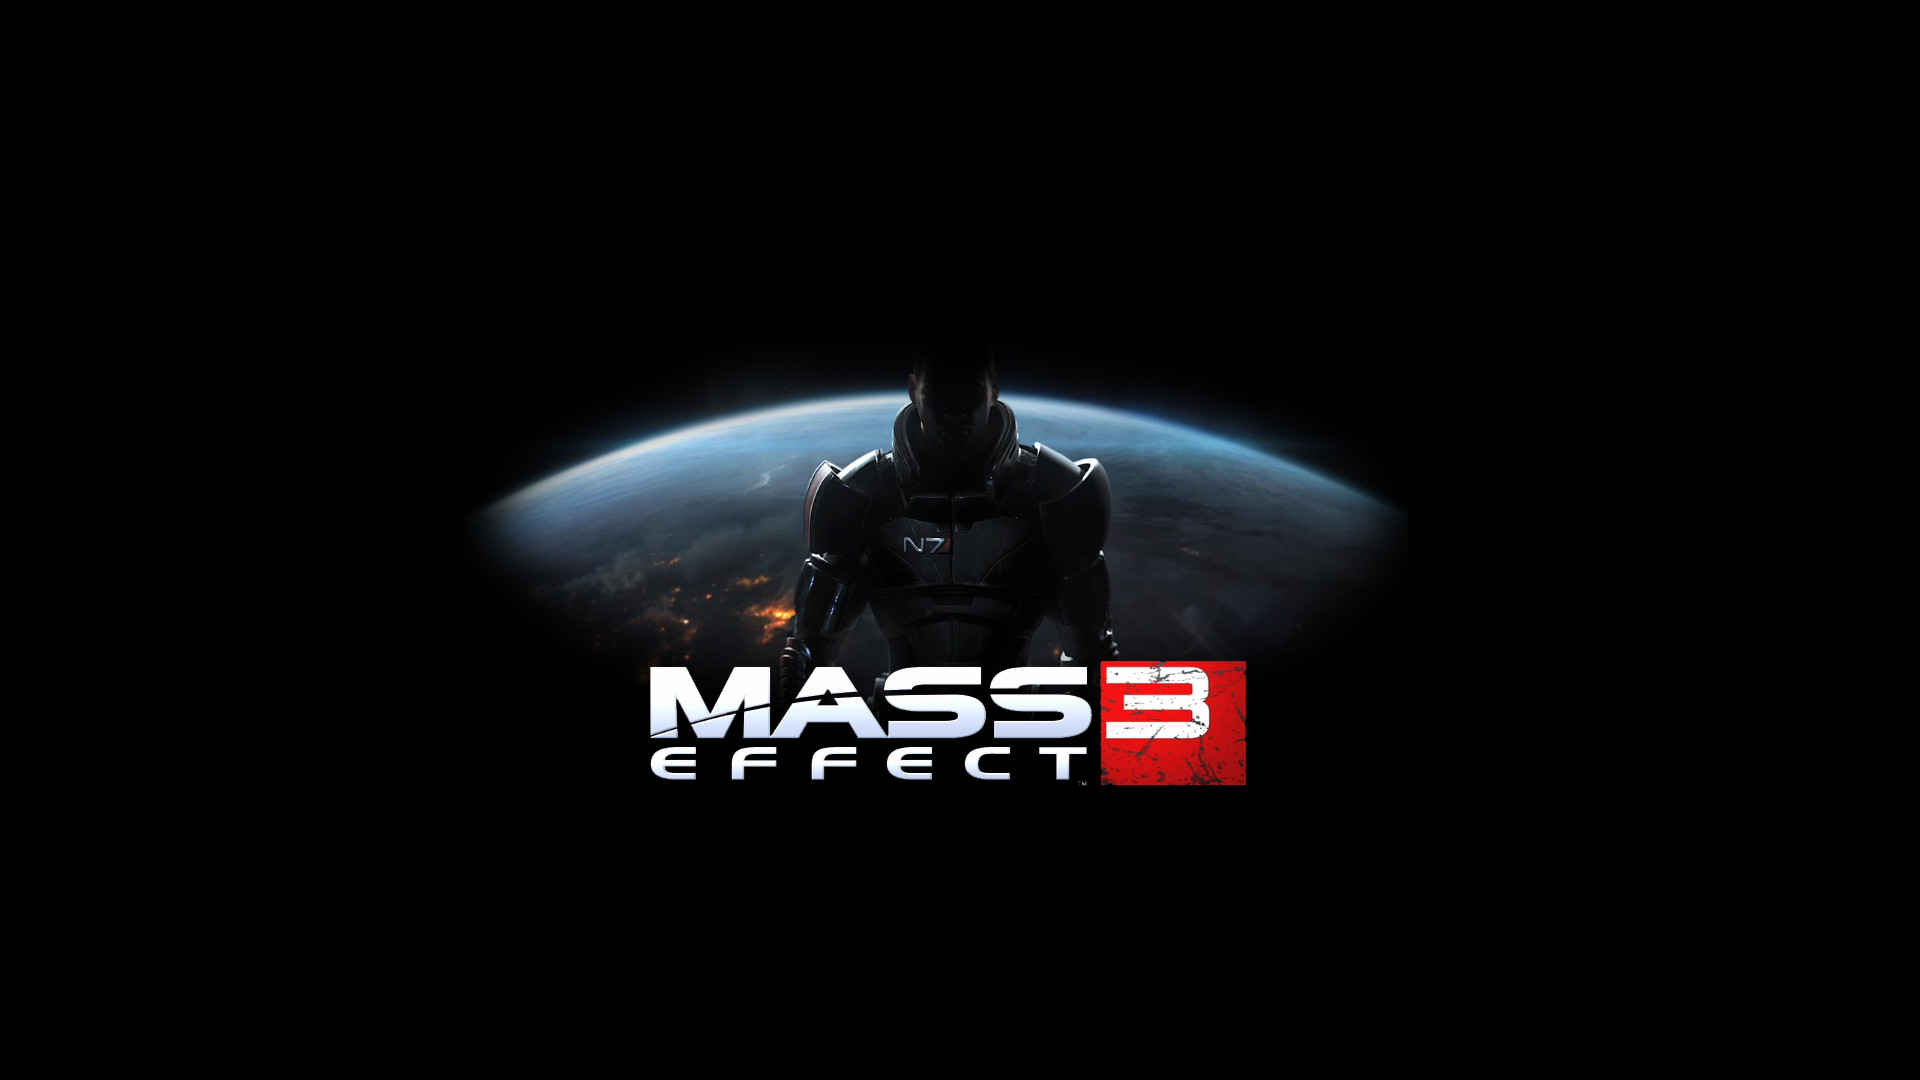 1920x1080 ... Download Mass Effect 3 Wallpaper